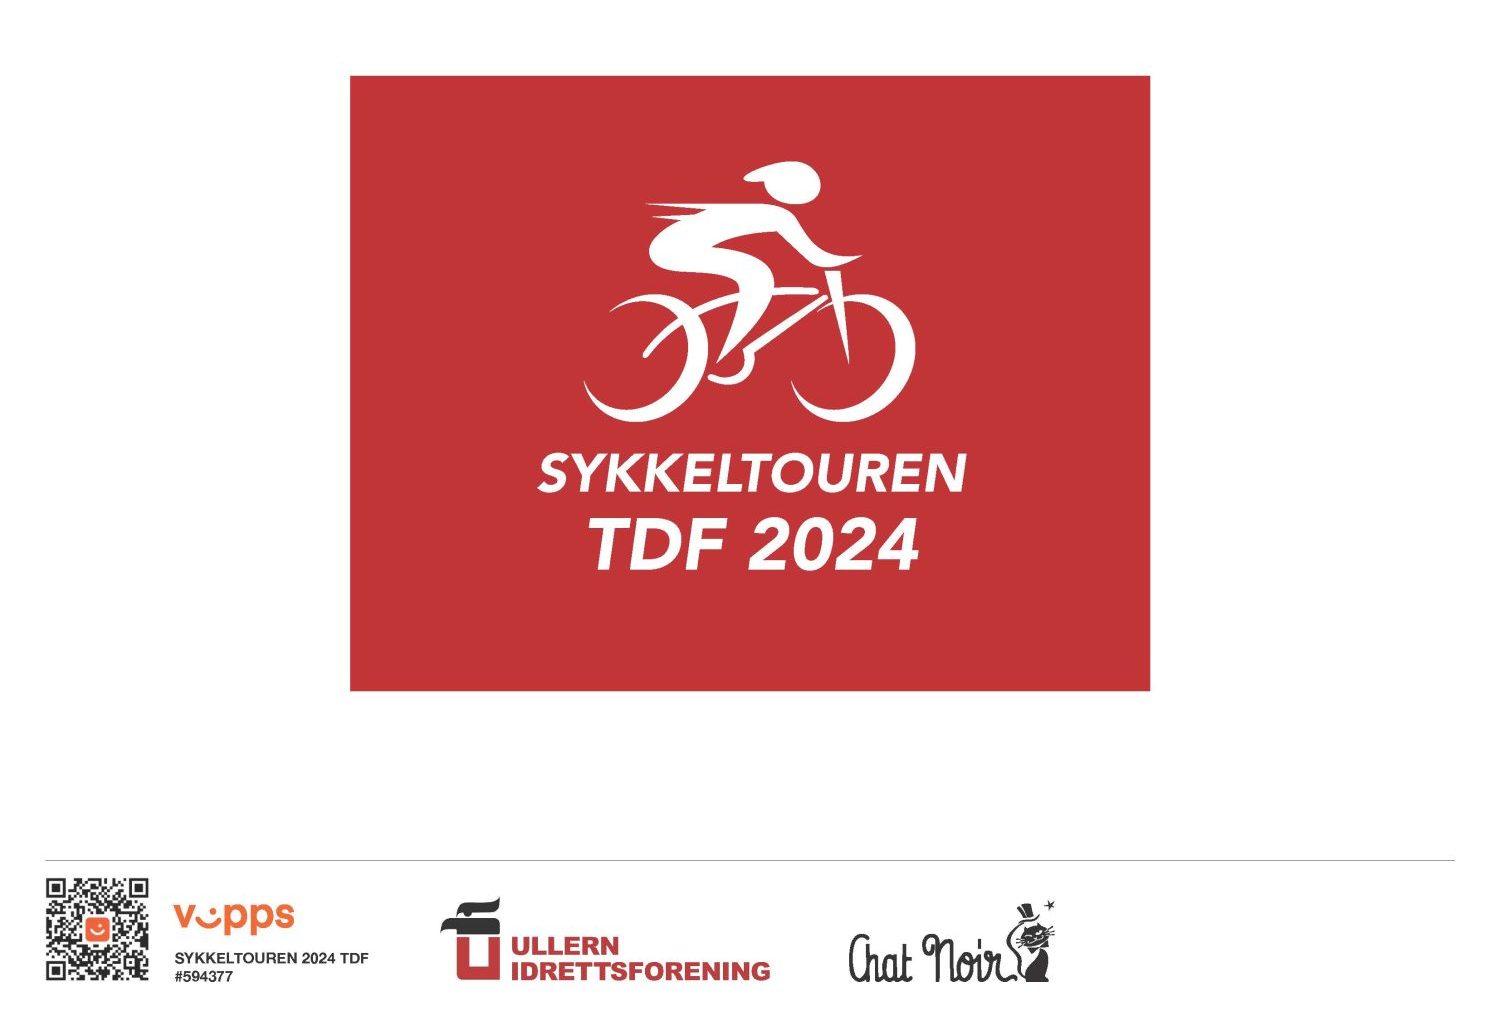 Sykkeltouren Tour de France 2024. Idrett og Kultur samarbeider og dette blir en spennende reise!